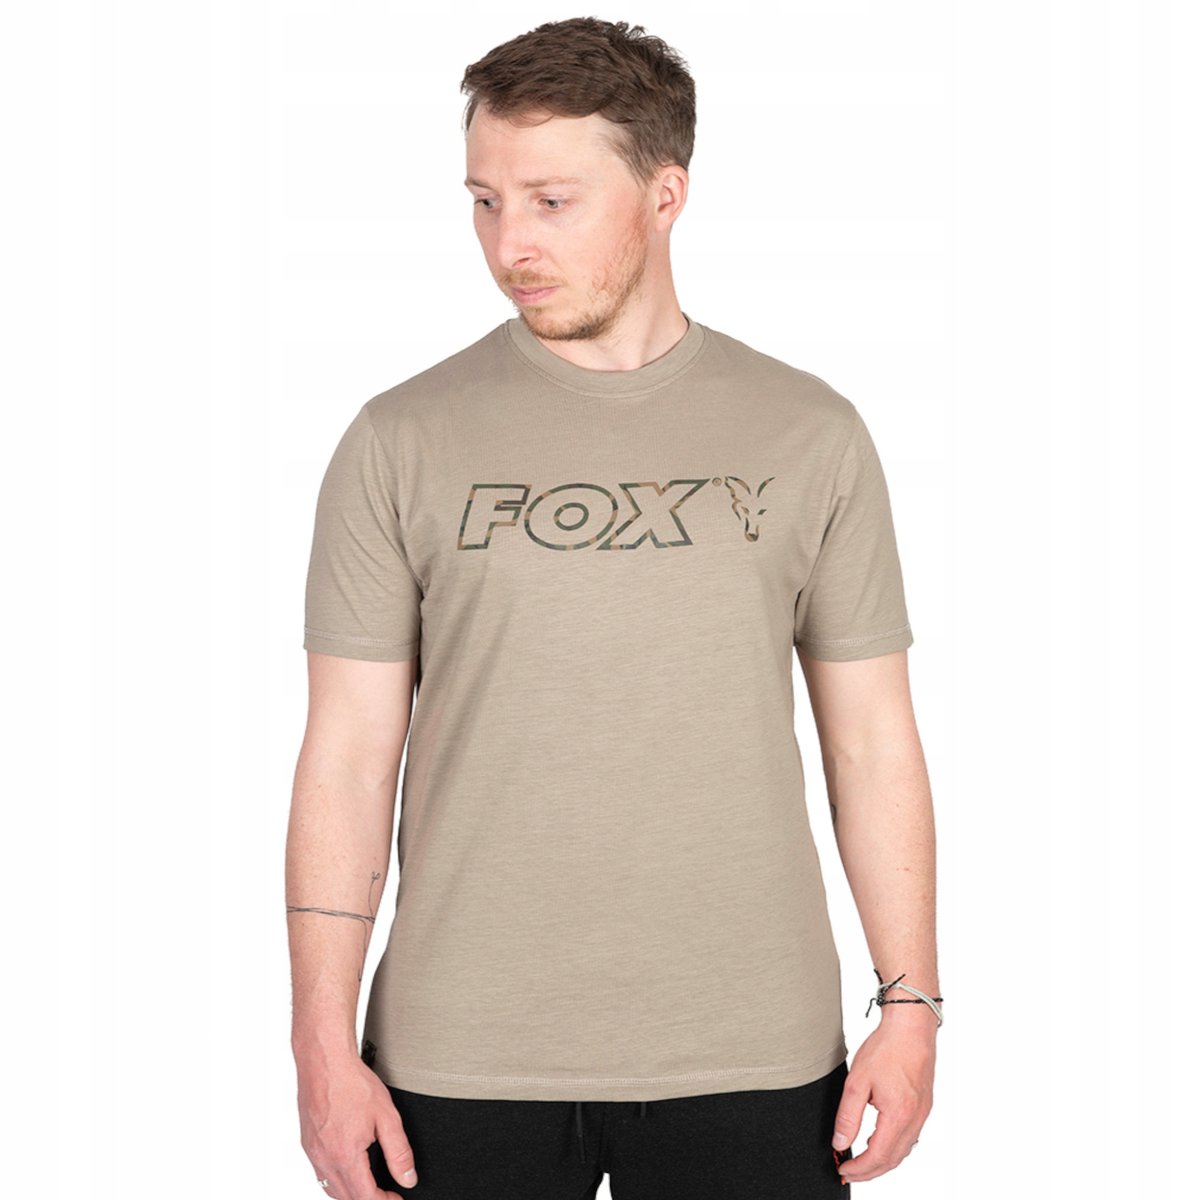 Zdjęcia - Odzież wędkarska Fox Koszulka Wędkarska T-Shirt  Ltd Lw Khaki Marl T R. Xl 